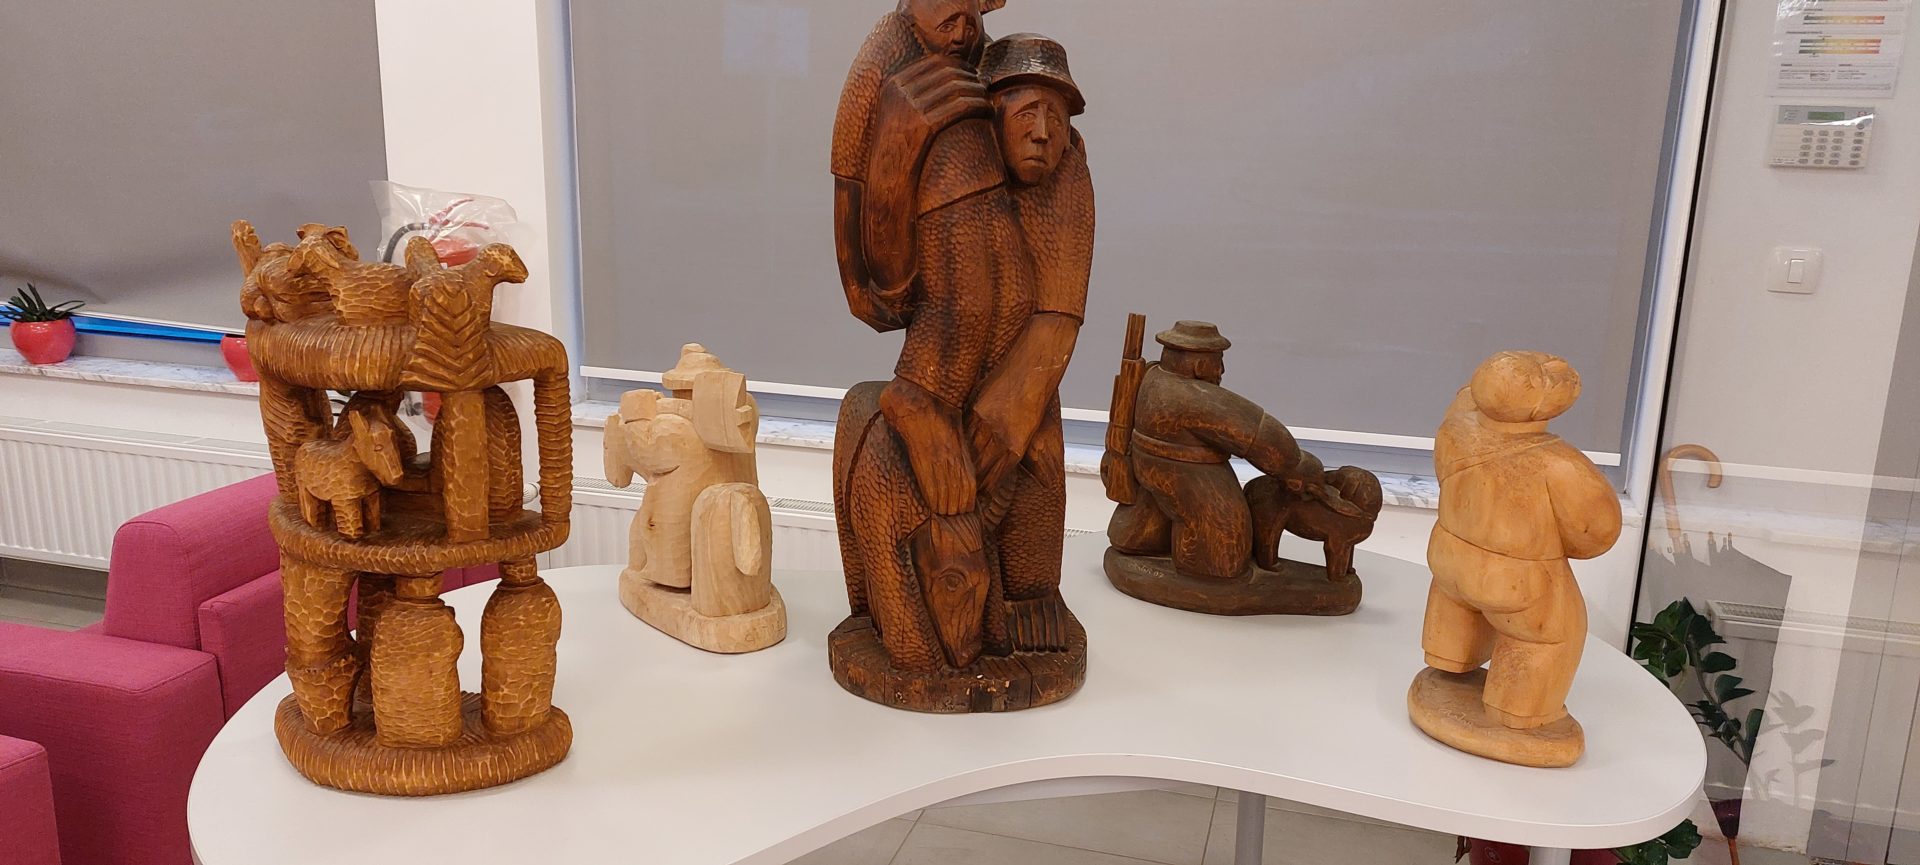 20220916 190157 - Edvin Puntar - razstava lesenih kiparskih del